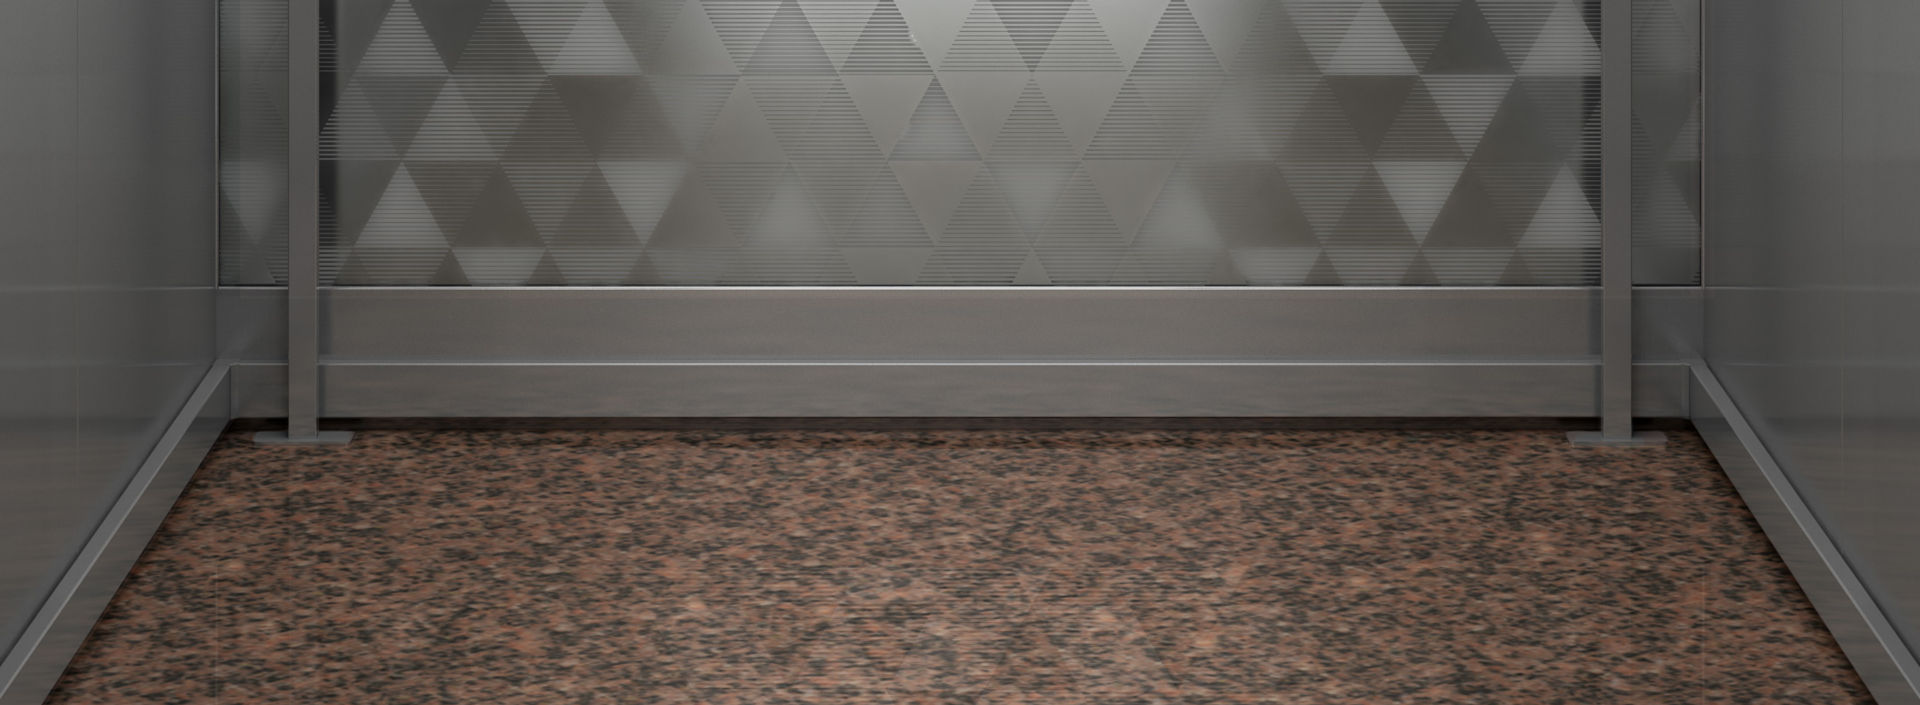 Interior de cabina de elevador con diseño de triángulos en el muro